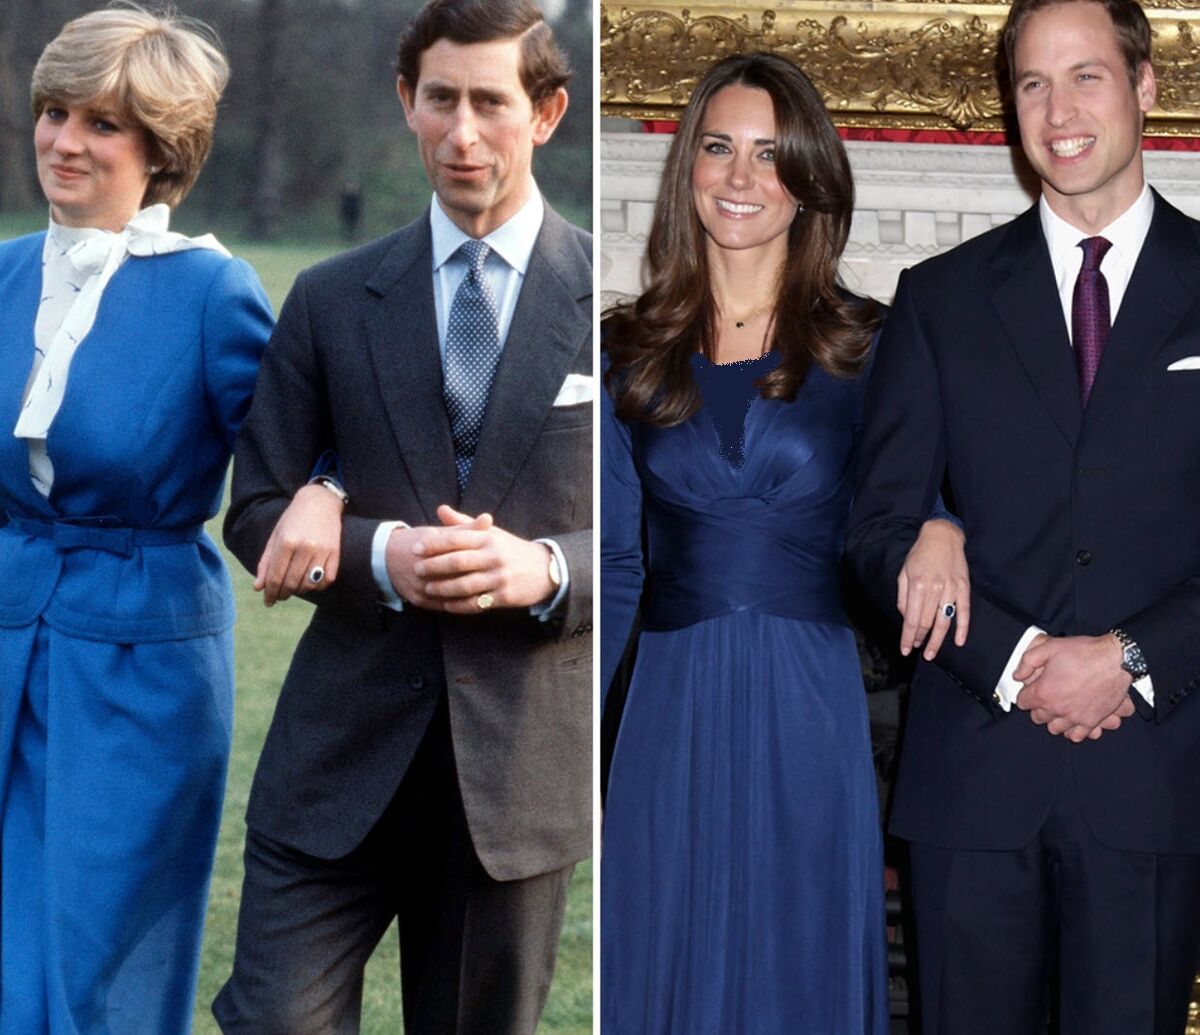 (تصاویر)خیره کننده ترین جواهر پرنسس دایانا، عروس سابق خاندان سلطنتی انگلستان در دستان کیت میدلتون، همسر شاهزاده ویلیام